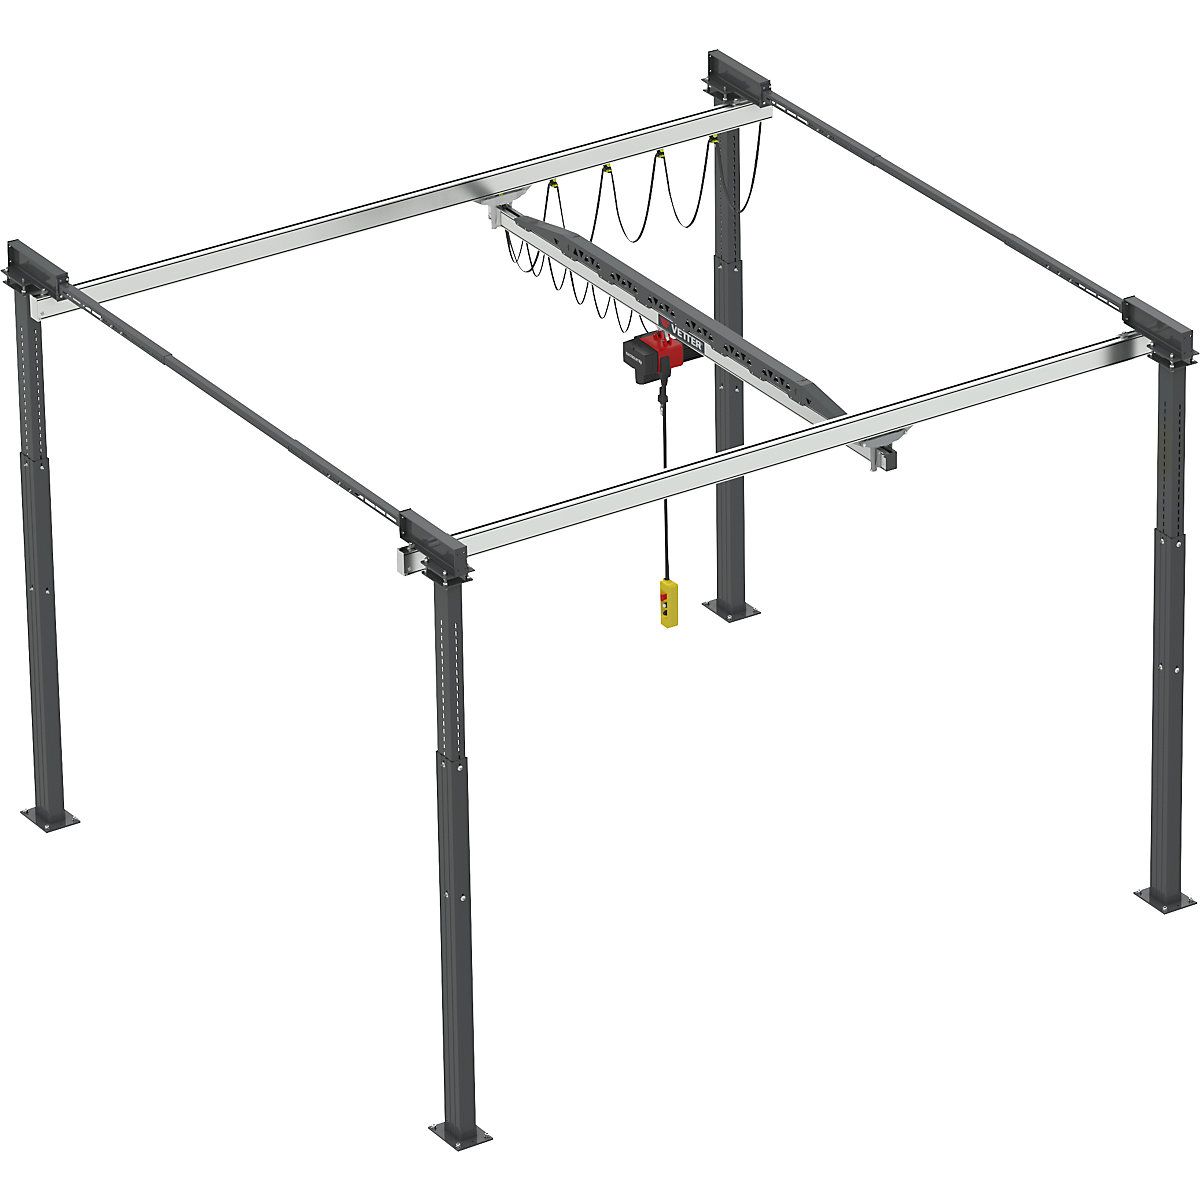 ErgoLine® gantry crane system - Vetter